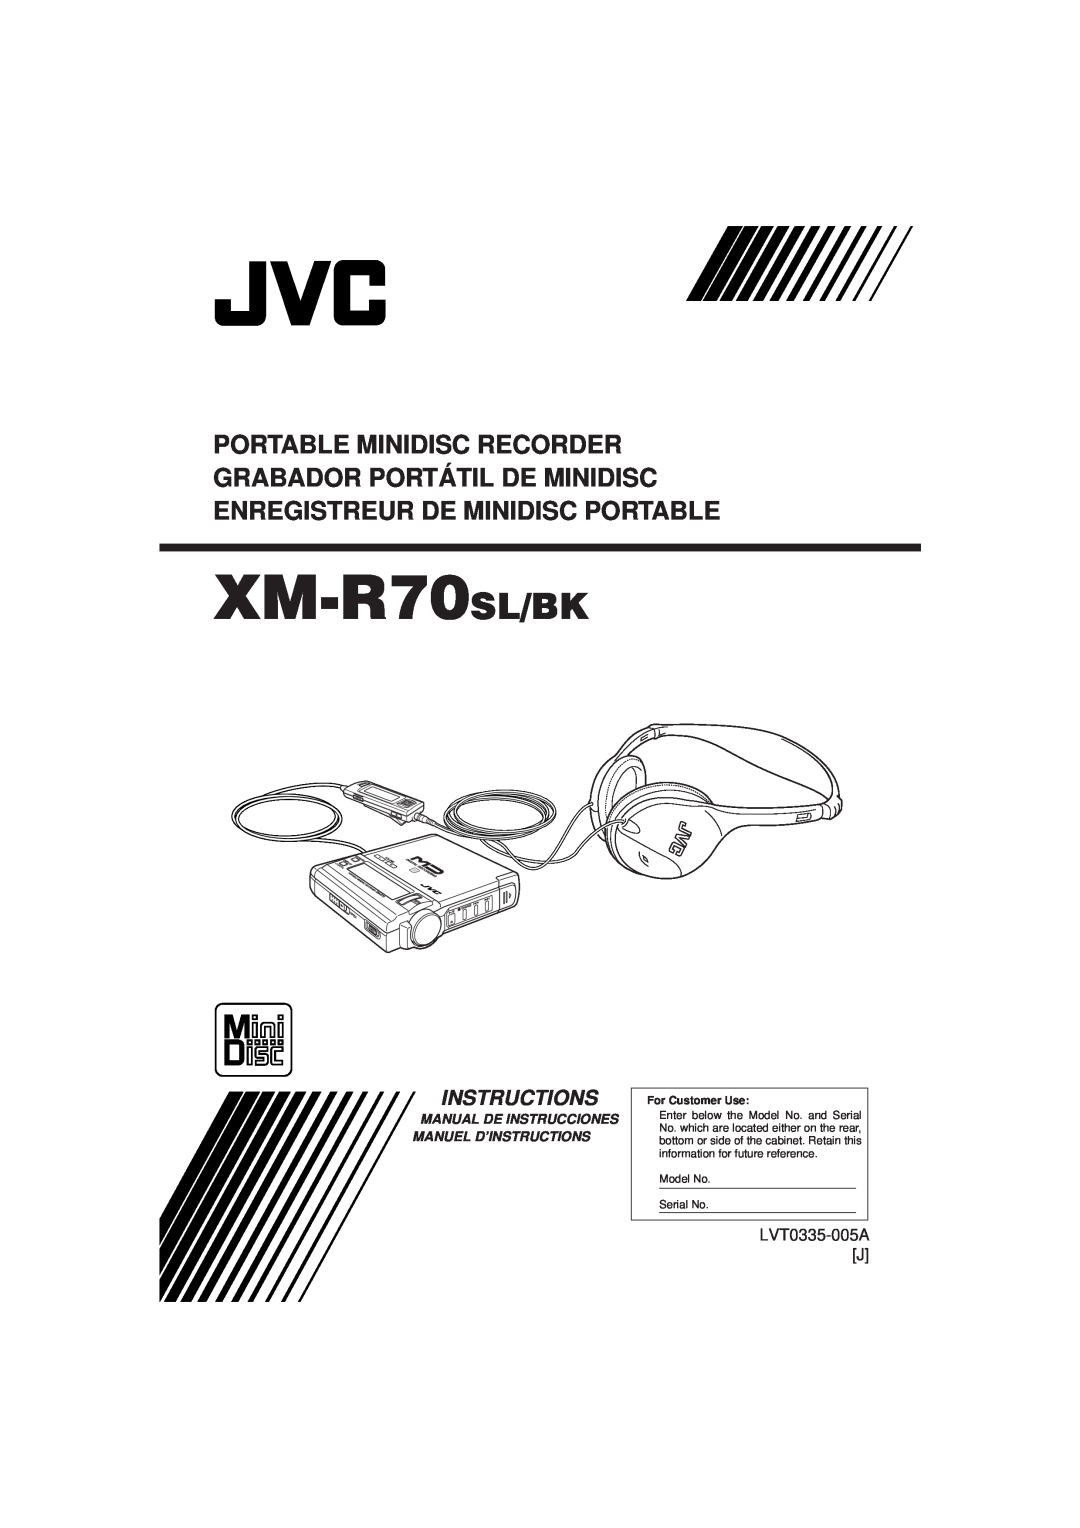 JVC XM-R70SL/BK manual LVT0335-005AJ, Manual De Instrucciones Manuel D’Instructions, Model No Serial No 